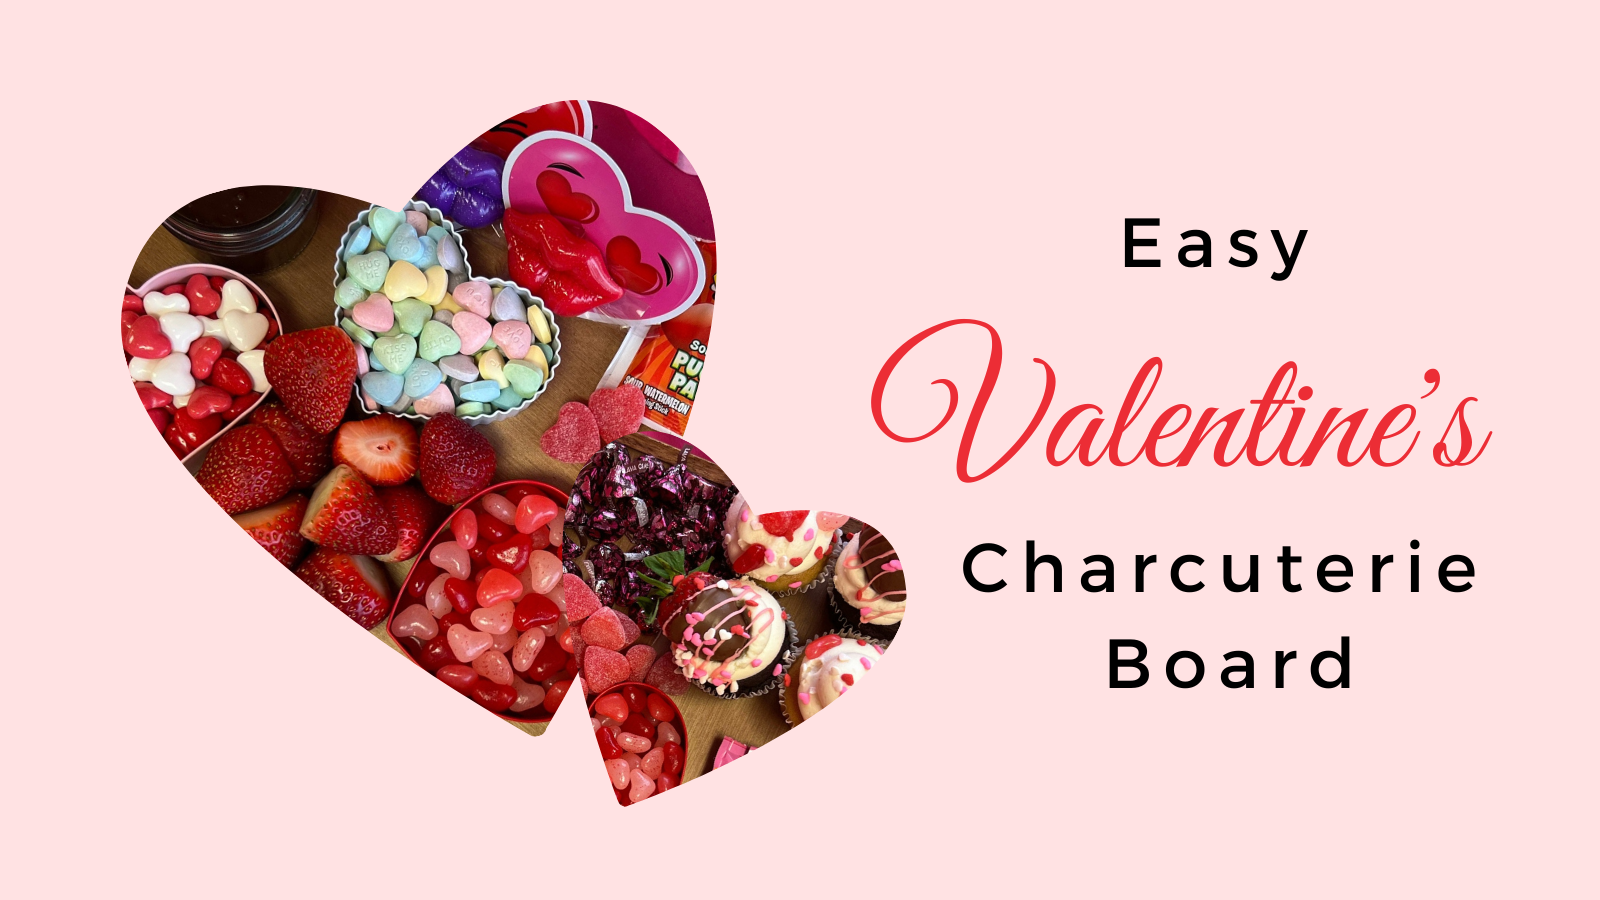 Easy Valentine’s Charcuterie Board